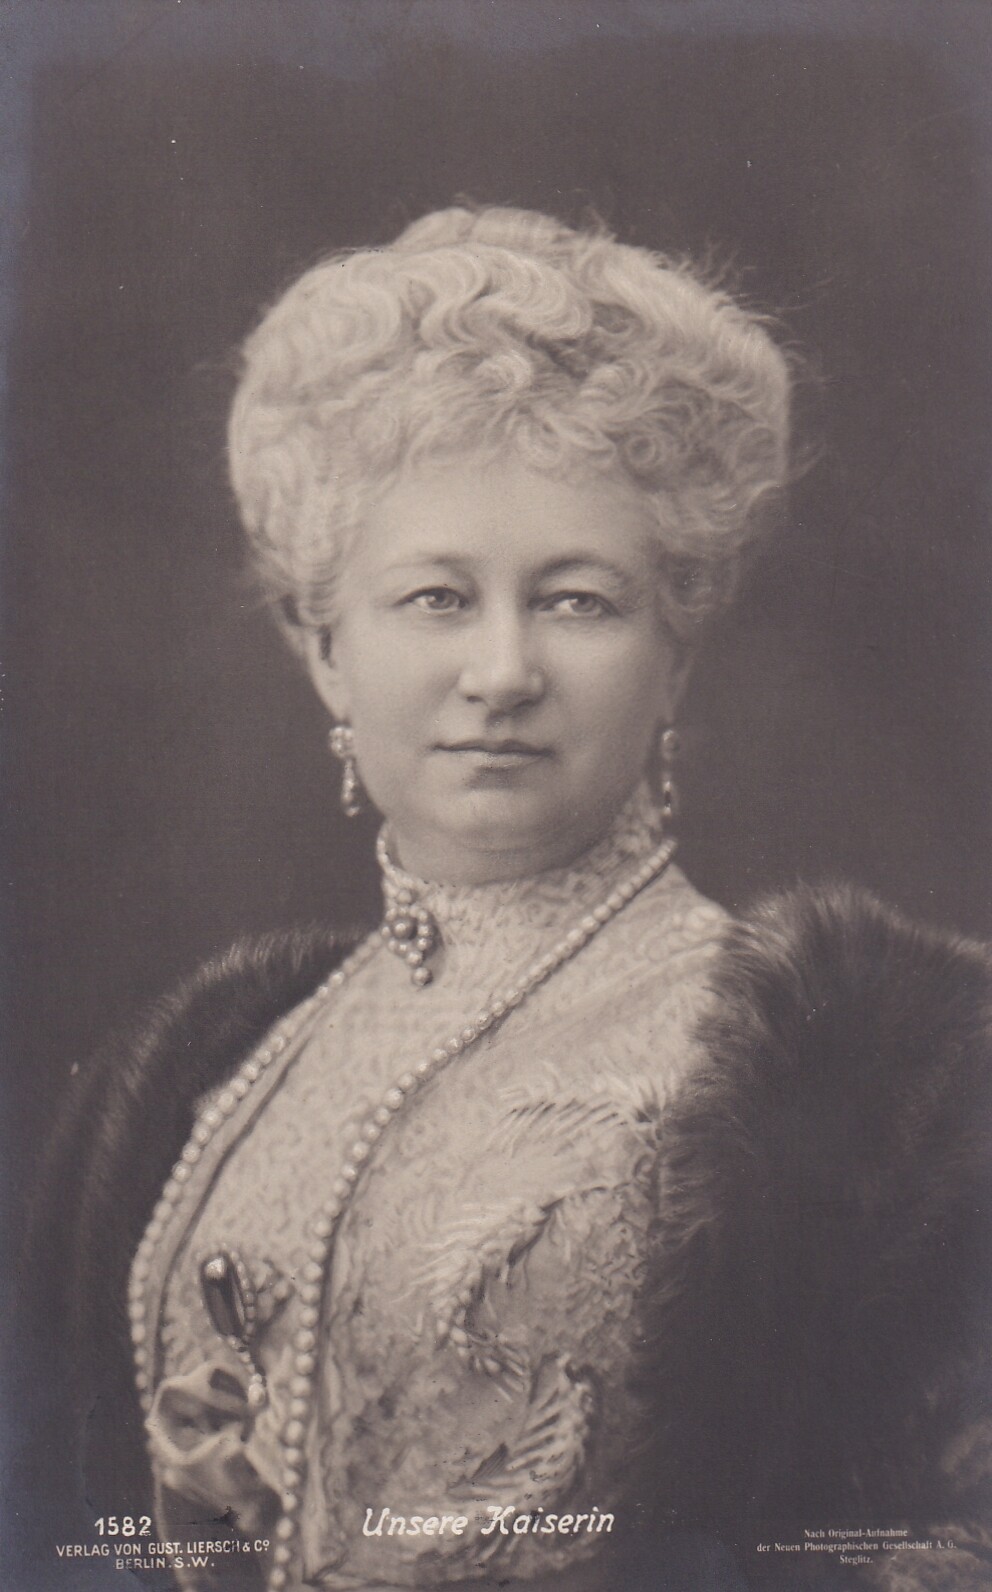 Bildpostkarte mit Foto der letzten deutschen Kaiserin Auguste Viktoria (1858-1921), 1907 (Schloß Wernigerode GmbH RR-F)